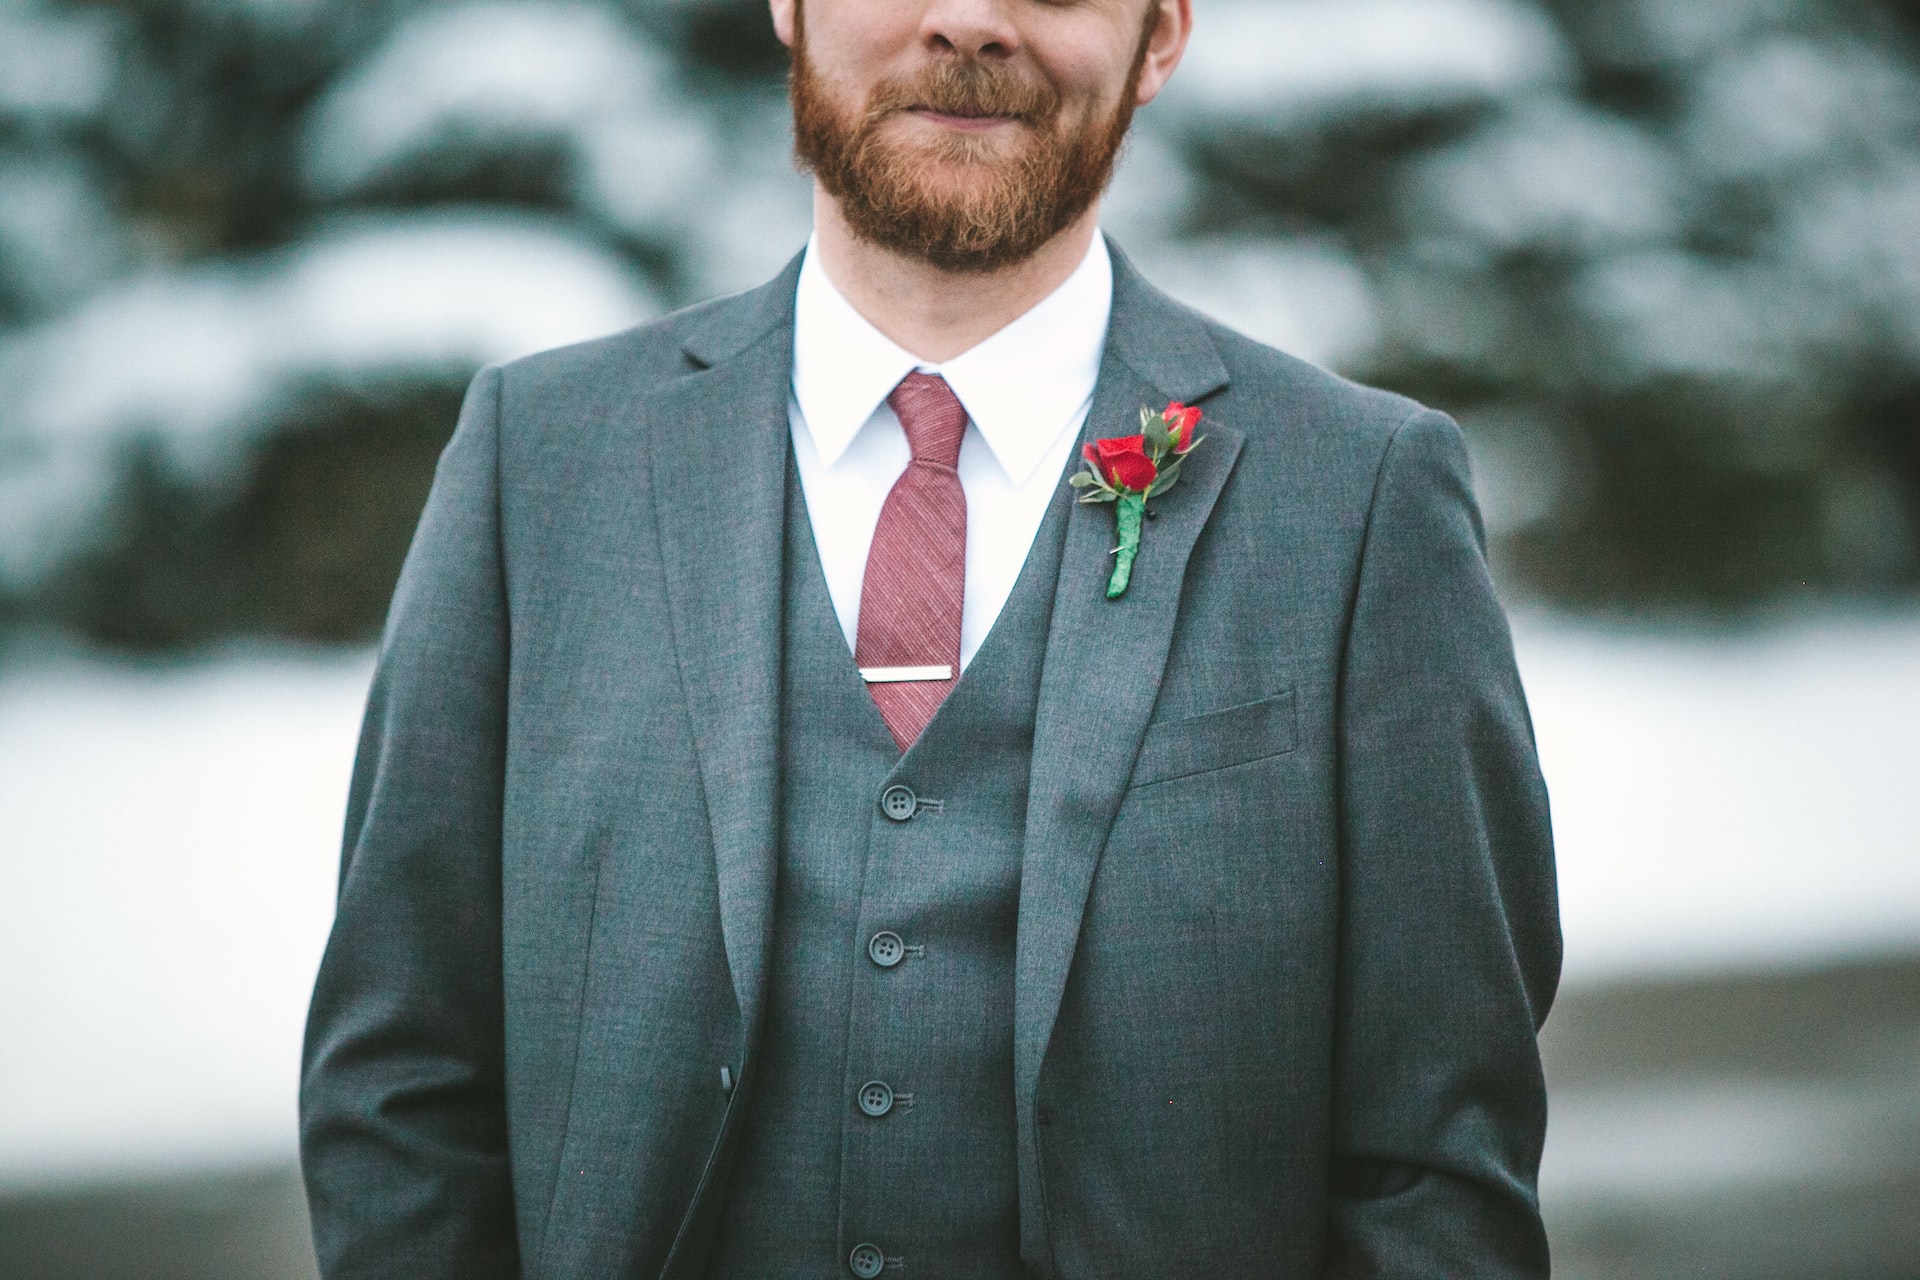 Bearded man in gray suit.